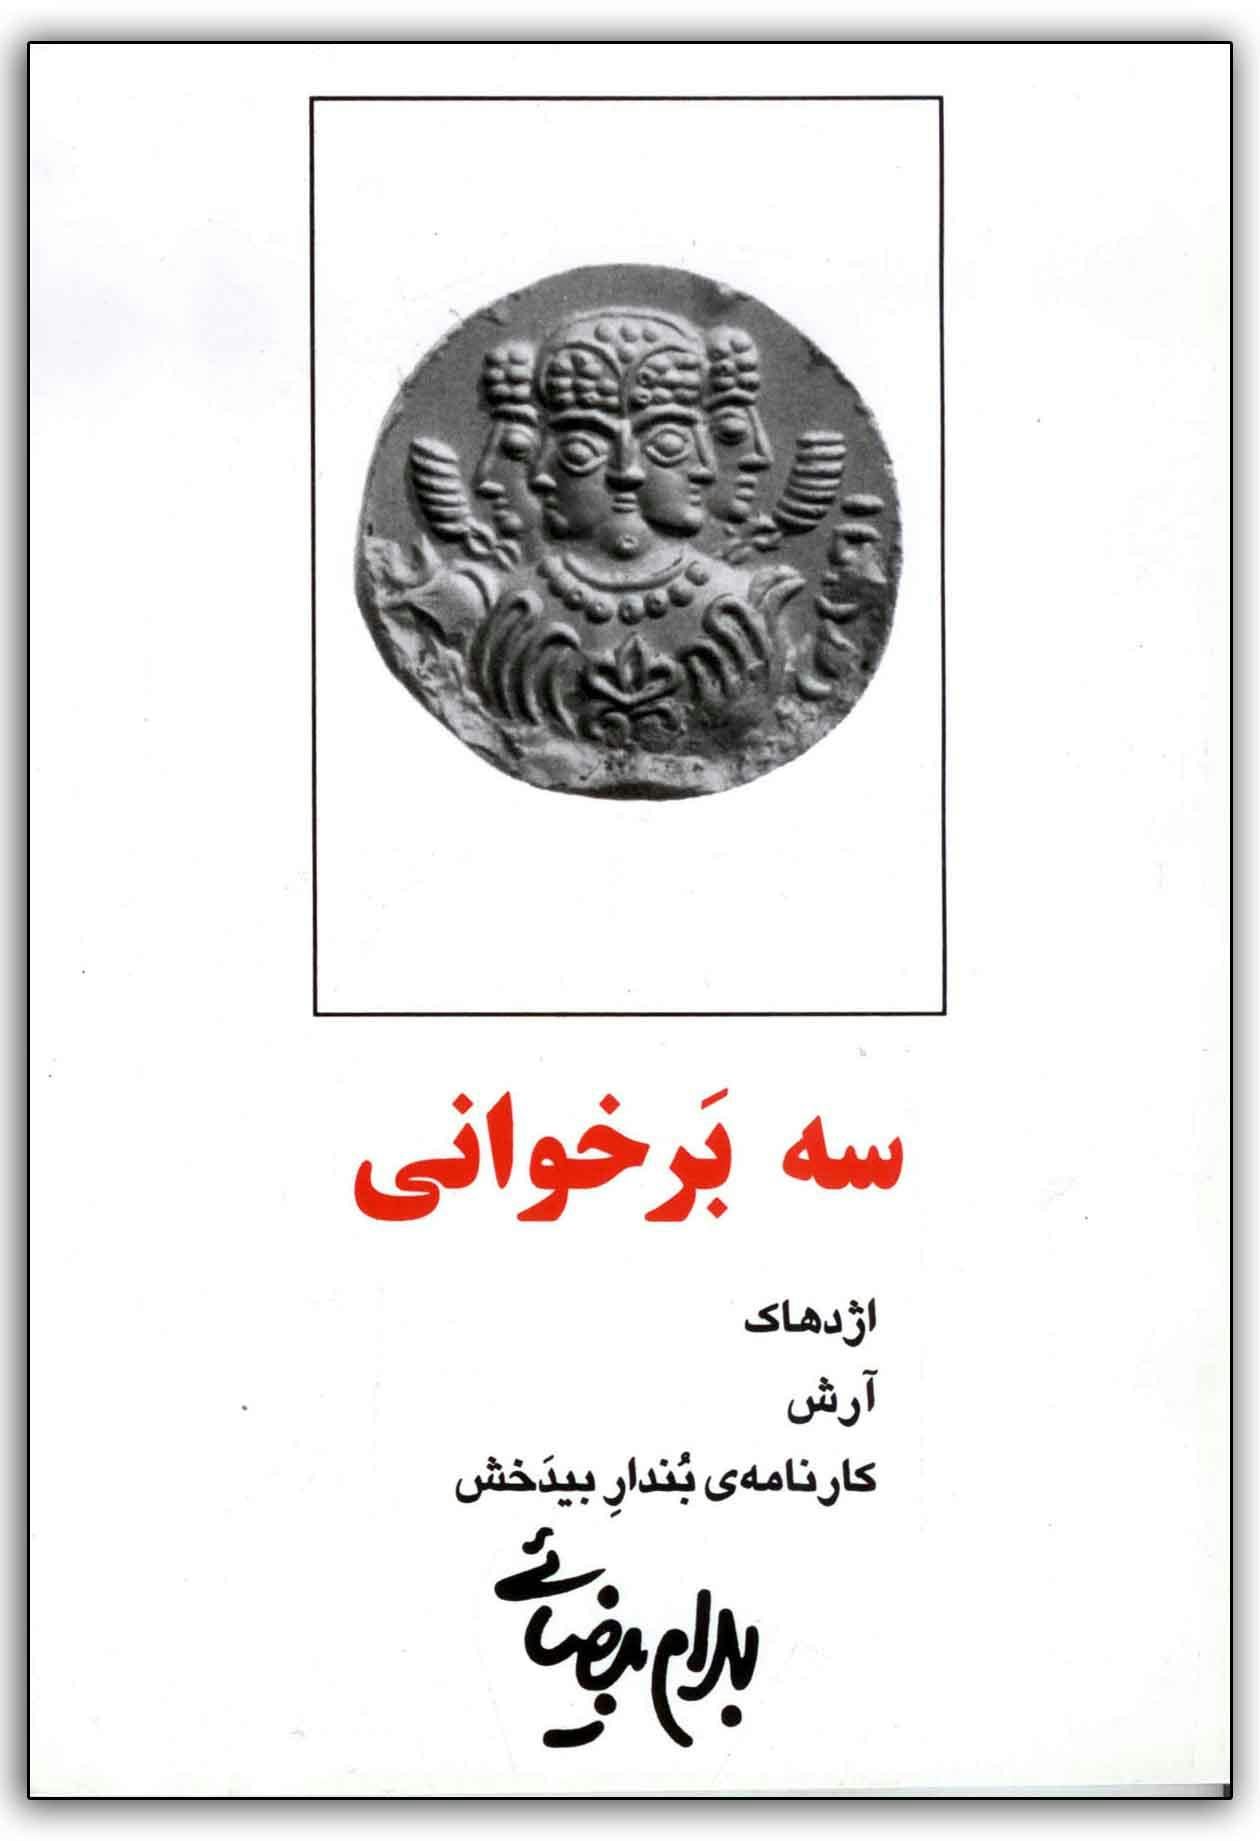 بهرام بیضایی، سه برخوانی، نشر روشنگران و مطالعات زنان، ۱۳۹۸ − بیضایی احتمالا شناخته‌شده‌ترین فردی است که کوشیده نسخه‌ای مدرن و متفاوت از اسطوره‌های کهن ایران ارائه کند.